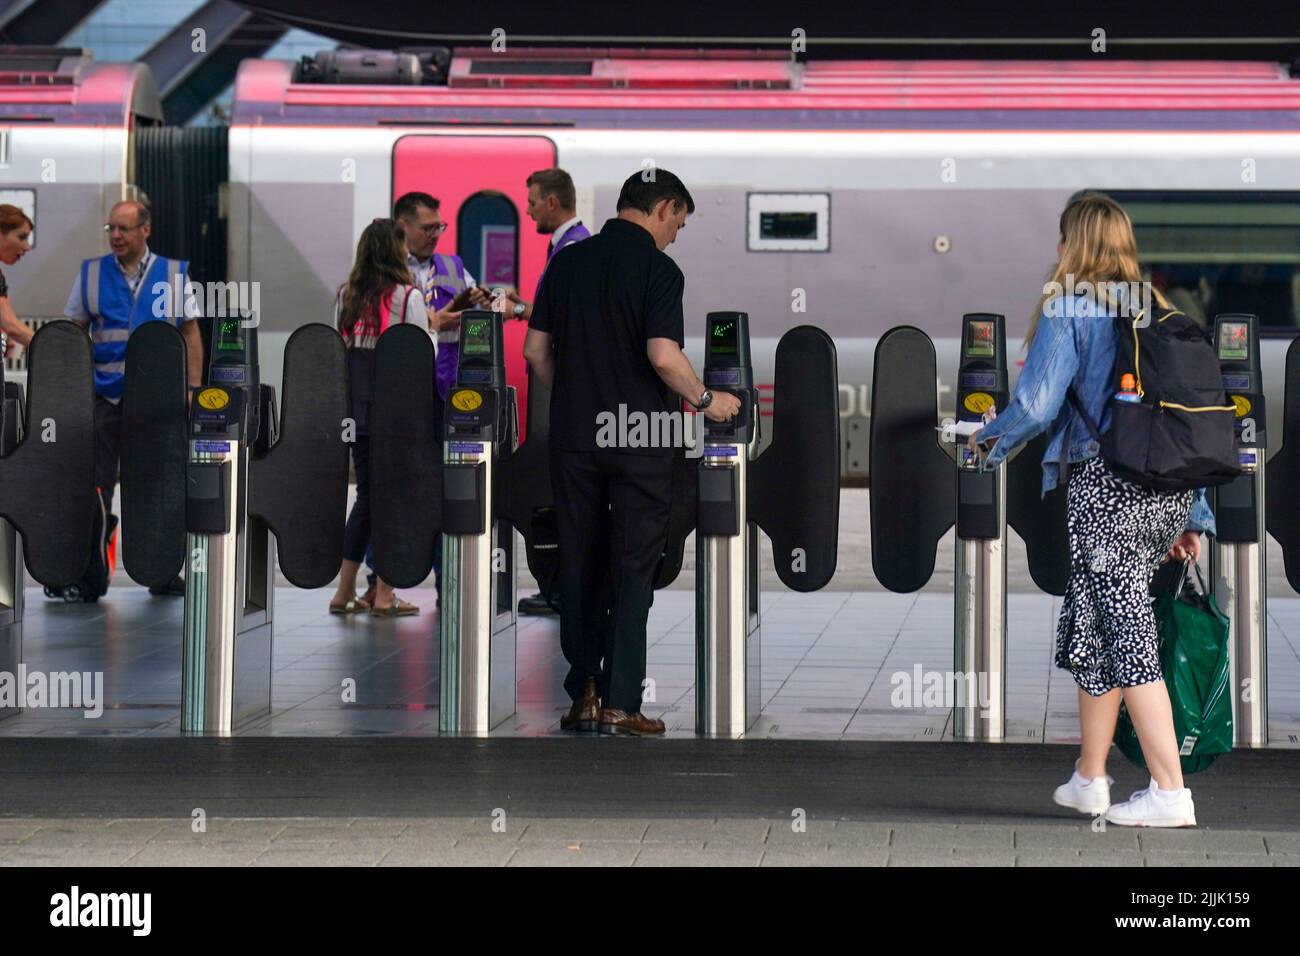 Les passagers de la gare de Reading, en tant que membres syndicaux, participent à une nouvelle grève sur les emplois, les salaires et les conditions. Date de la photo: Mercredi 27 juillet 2022. Banque D'Images